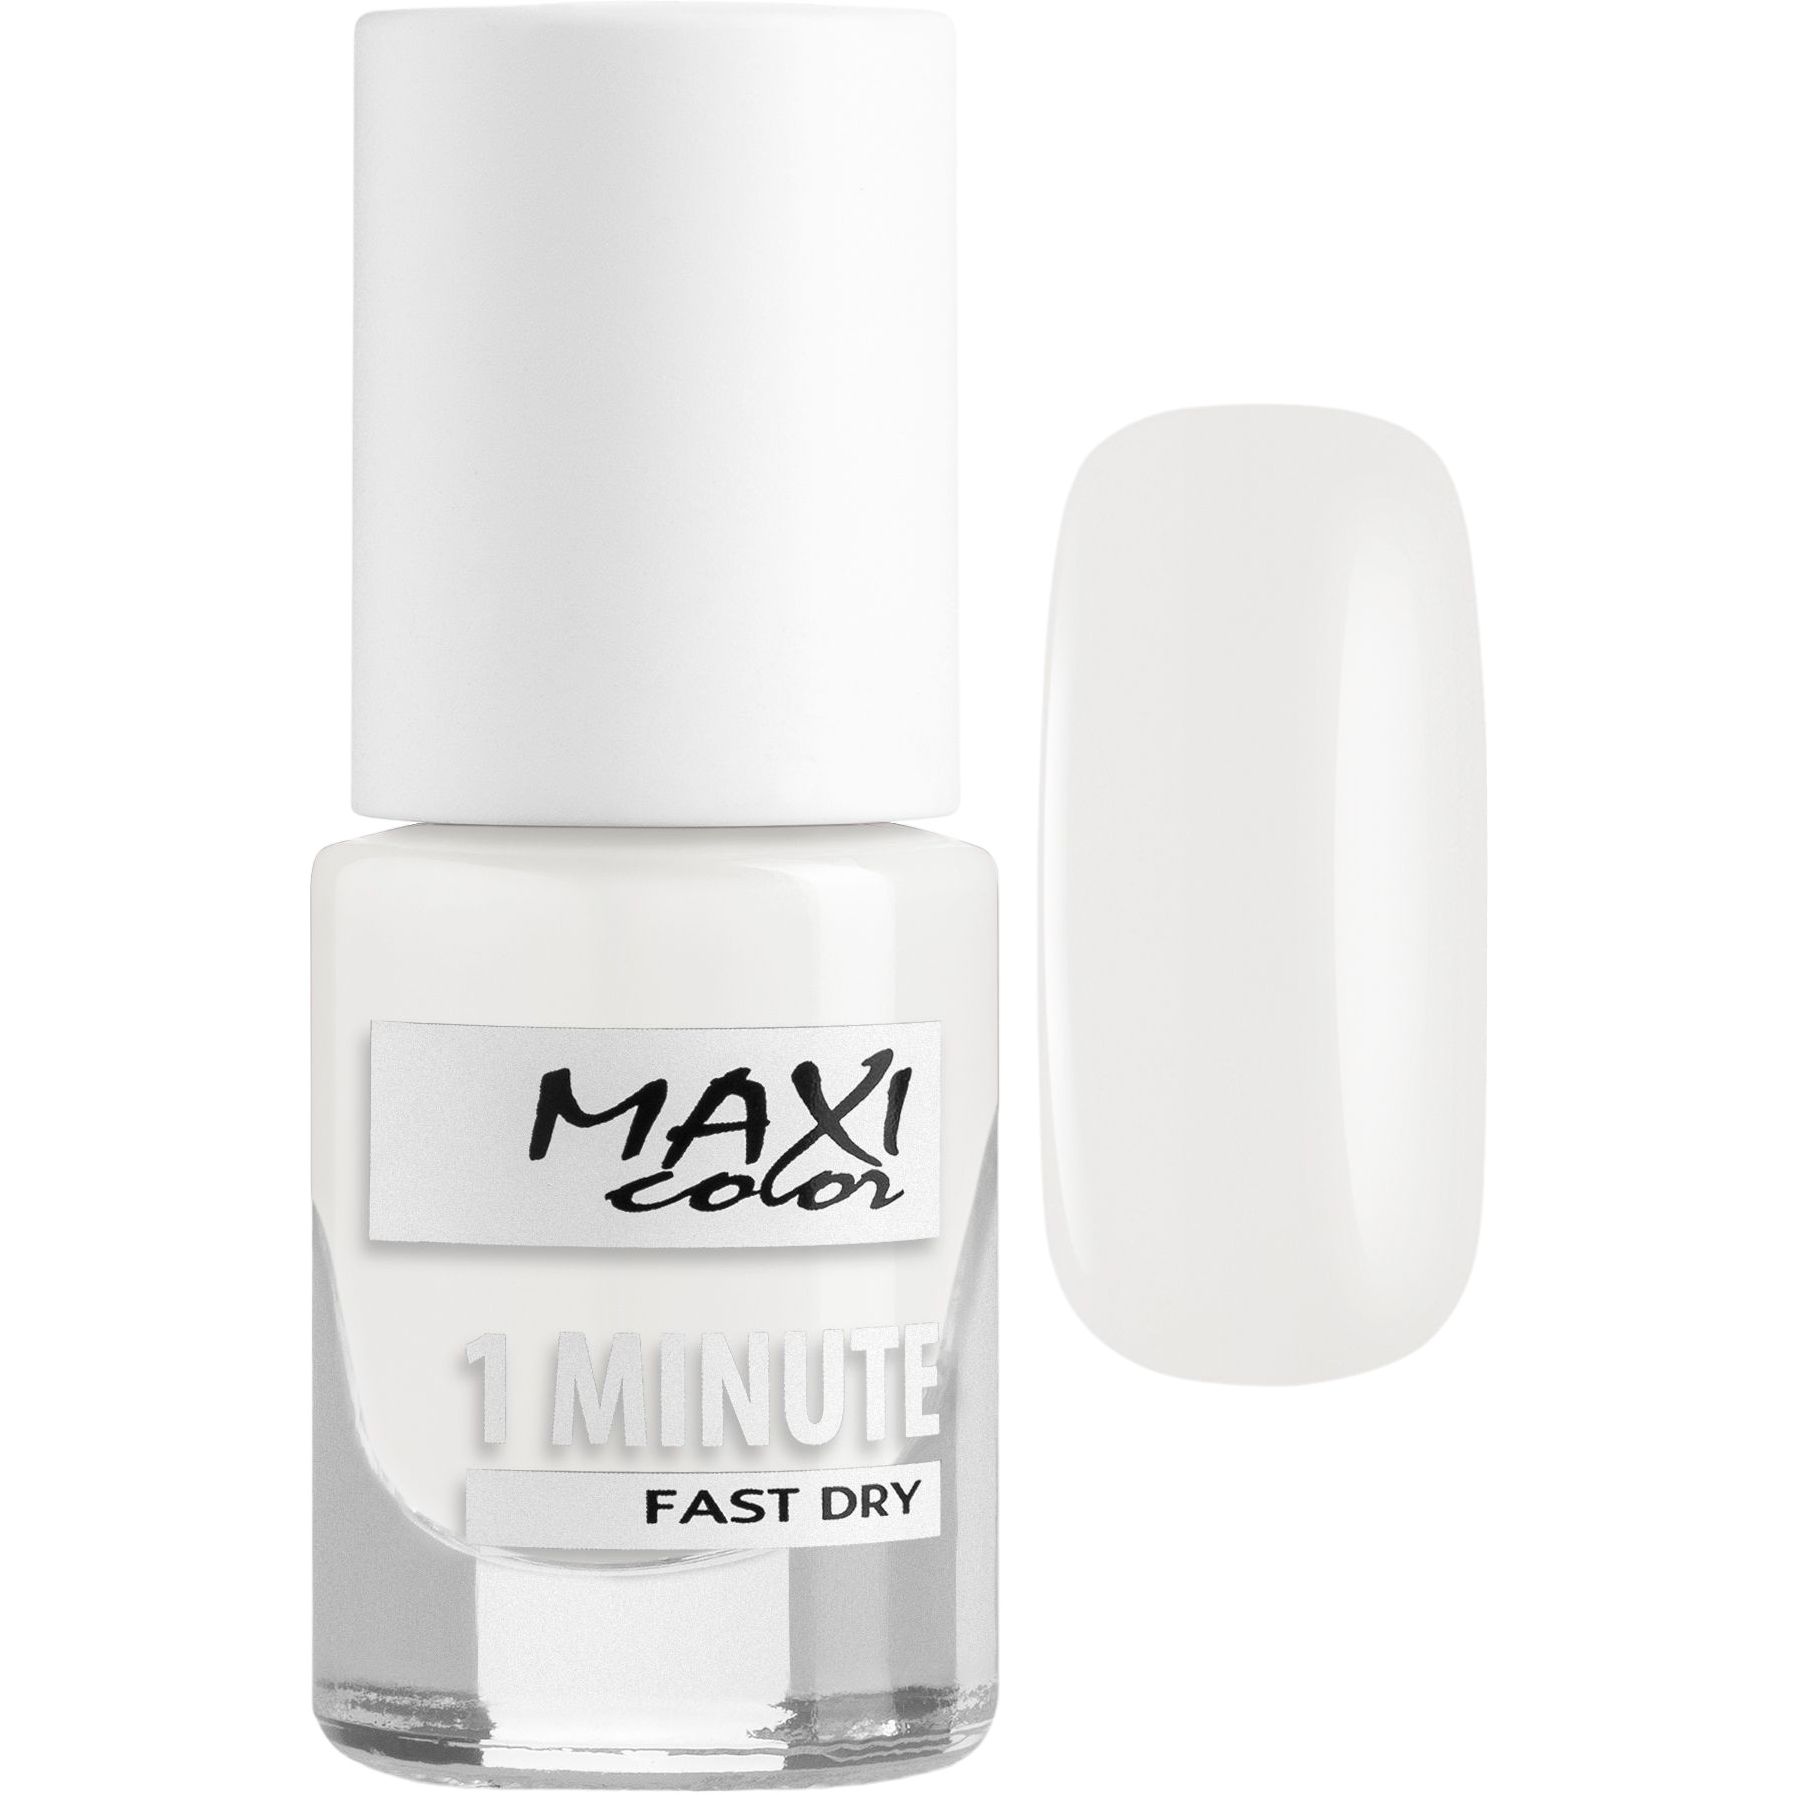 Лак для ногтей Maxi Color 1 Minute Fast Dry тон 003, 6 мл - фото 1